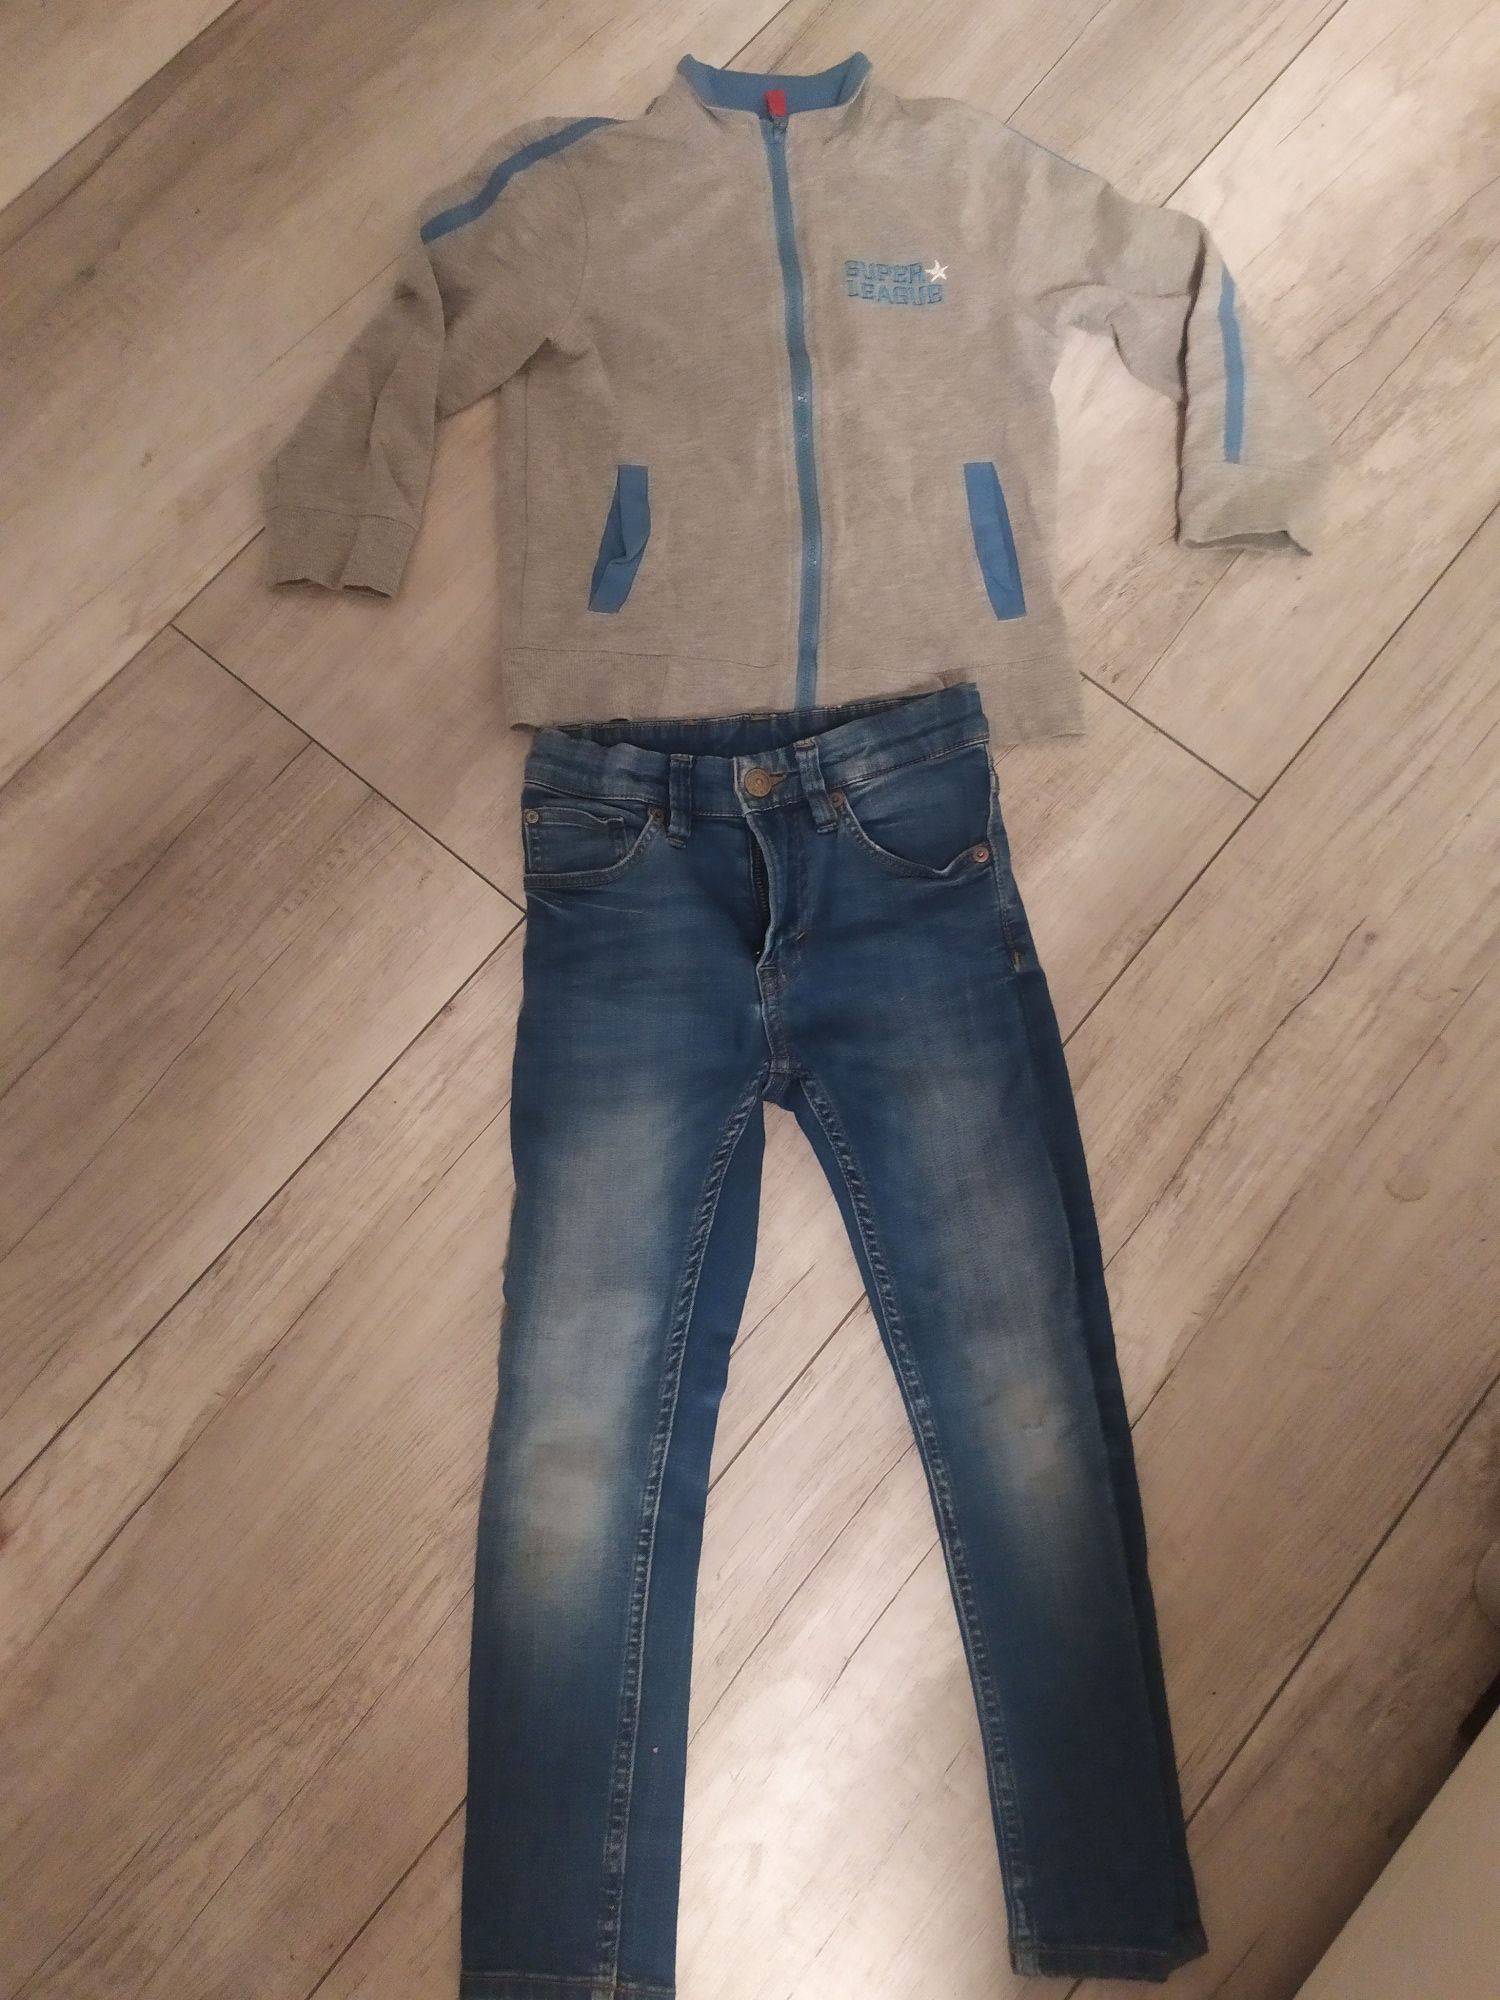 Bluza i spodnie jeans dla chłopca 110-116